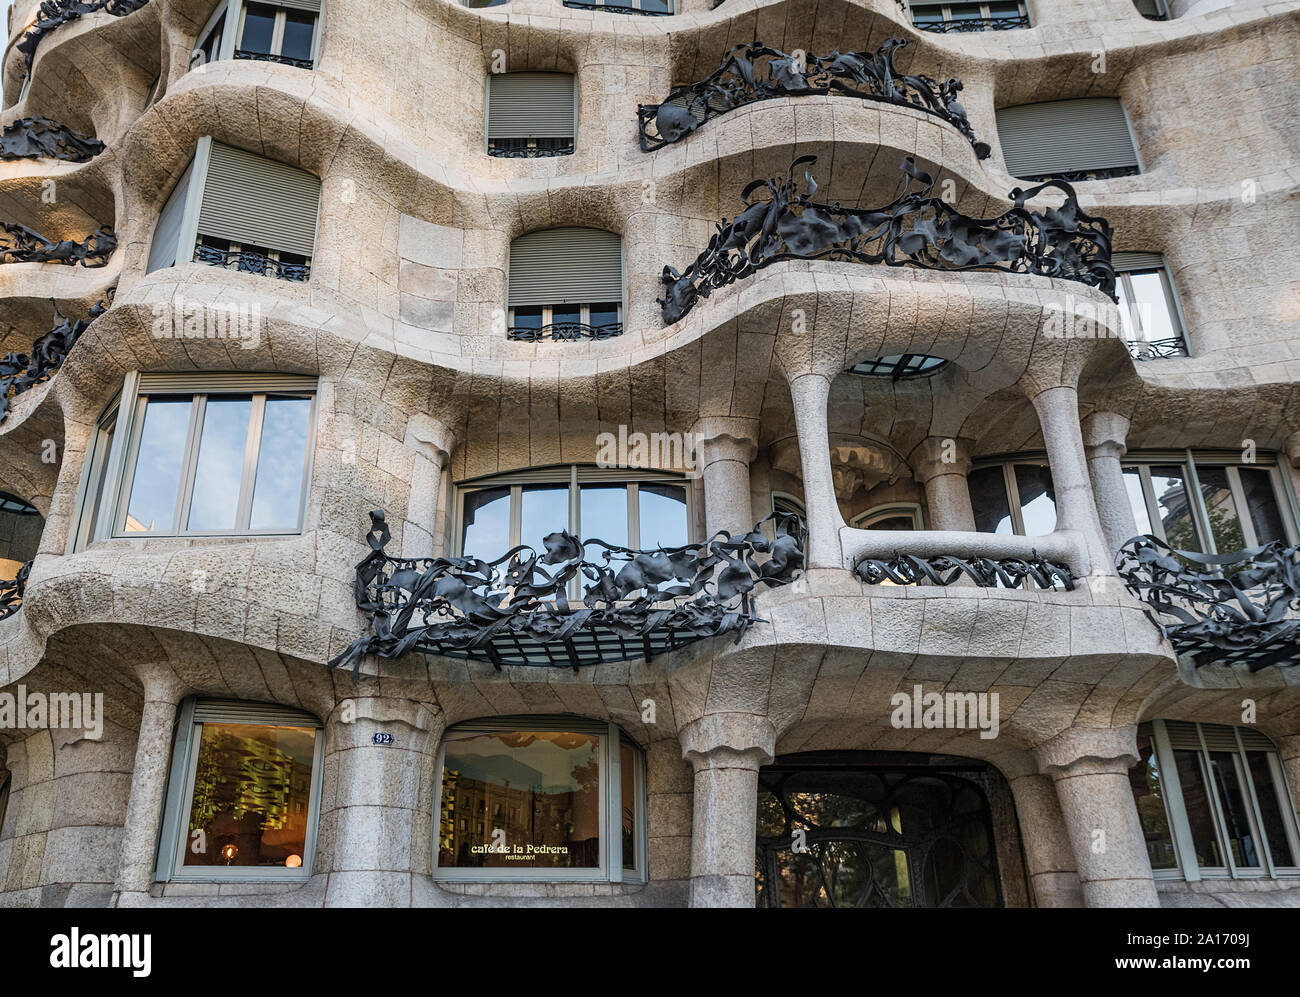 Cafe de la Pedrera, Casa Milà house designed by Antonio Gaudi, Barcelona, Spain. Stock Photo